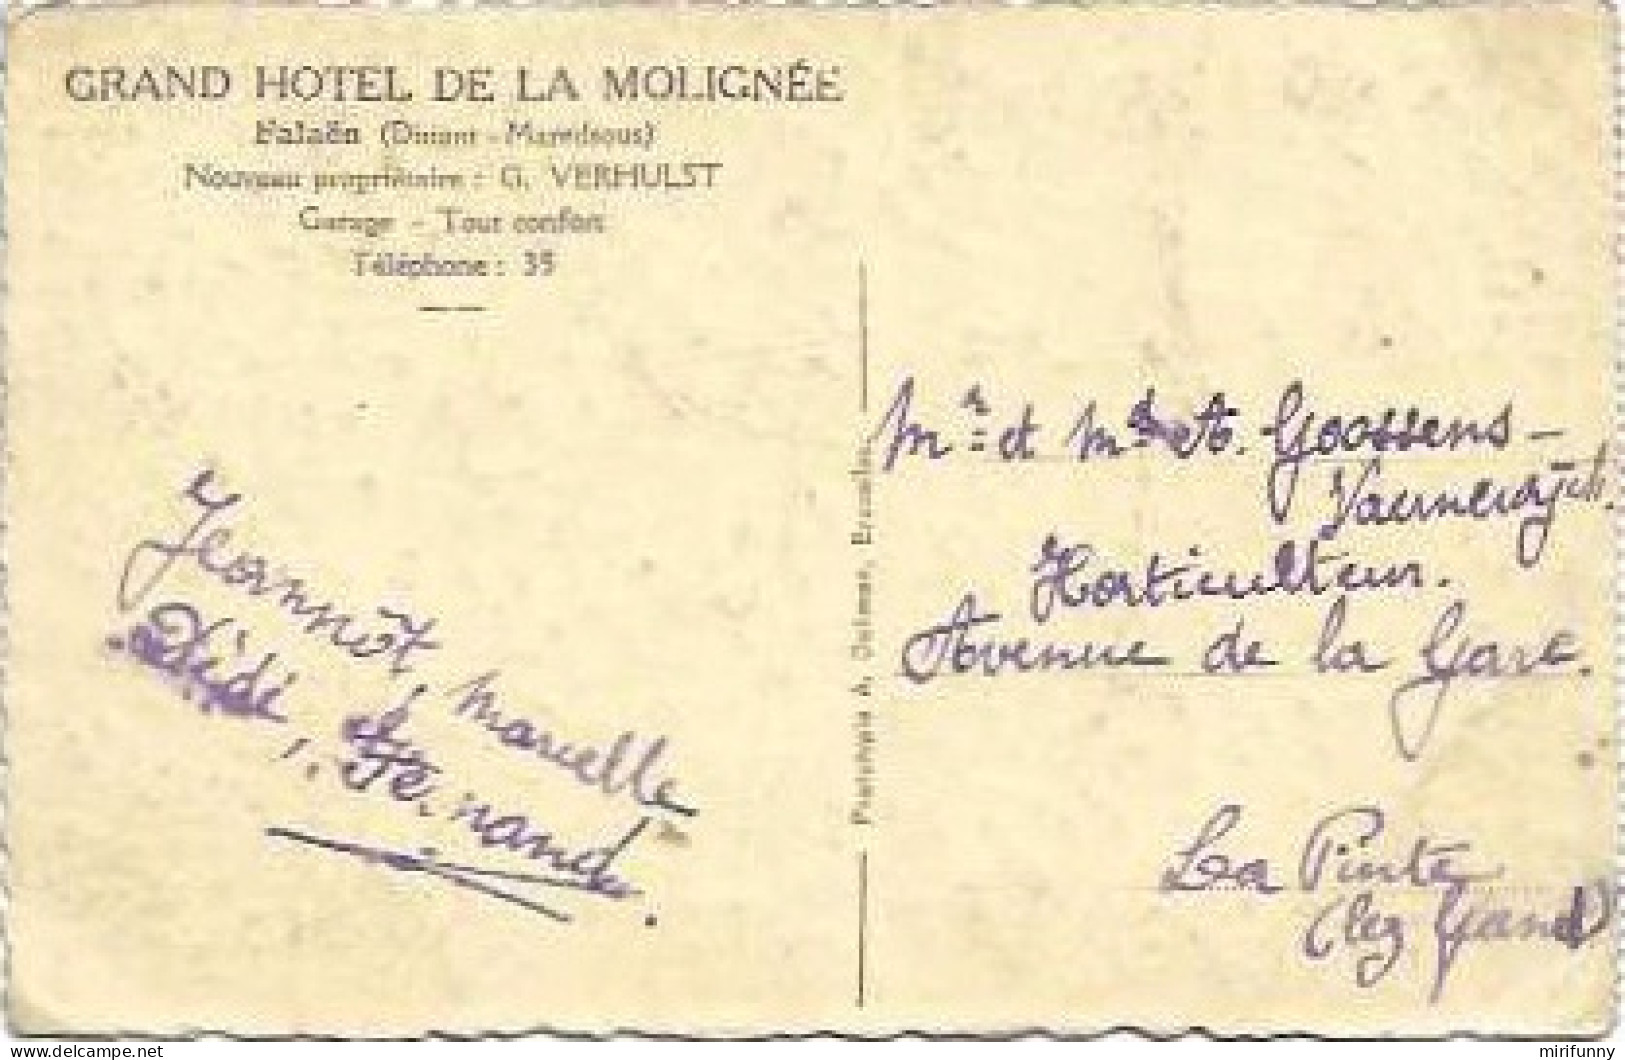 FALAEN (DINANT MAREDSOUS) GRAND HOTEL DE LA MOLIGNEE NOUVEAU PROPRIETAIRE G. VERHULST/UNE VUE DES ENVIRONS DE L HOTEL - Onhaye